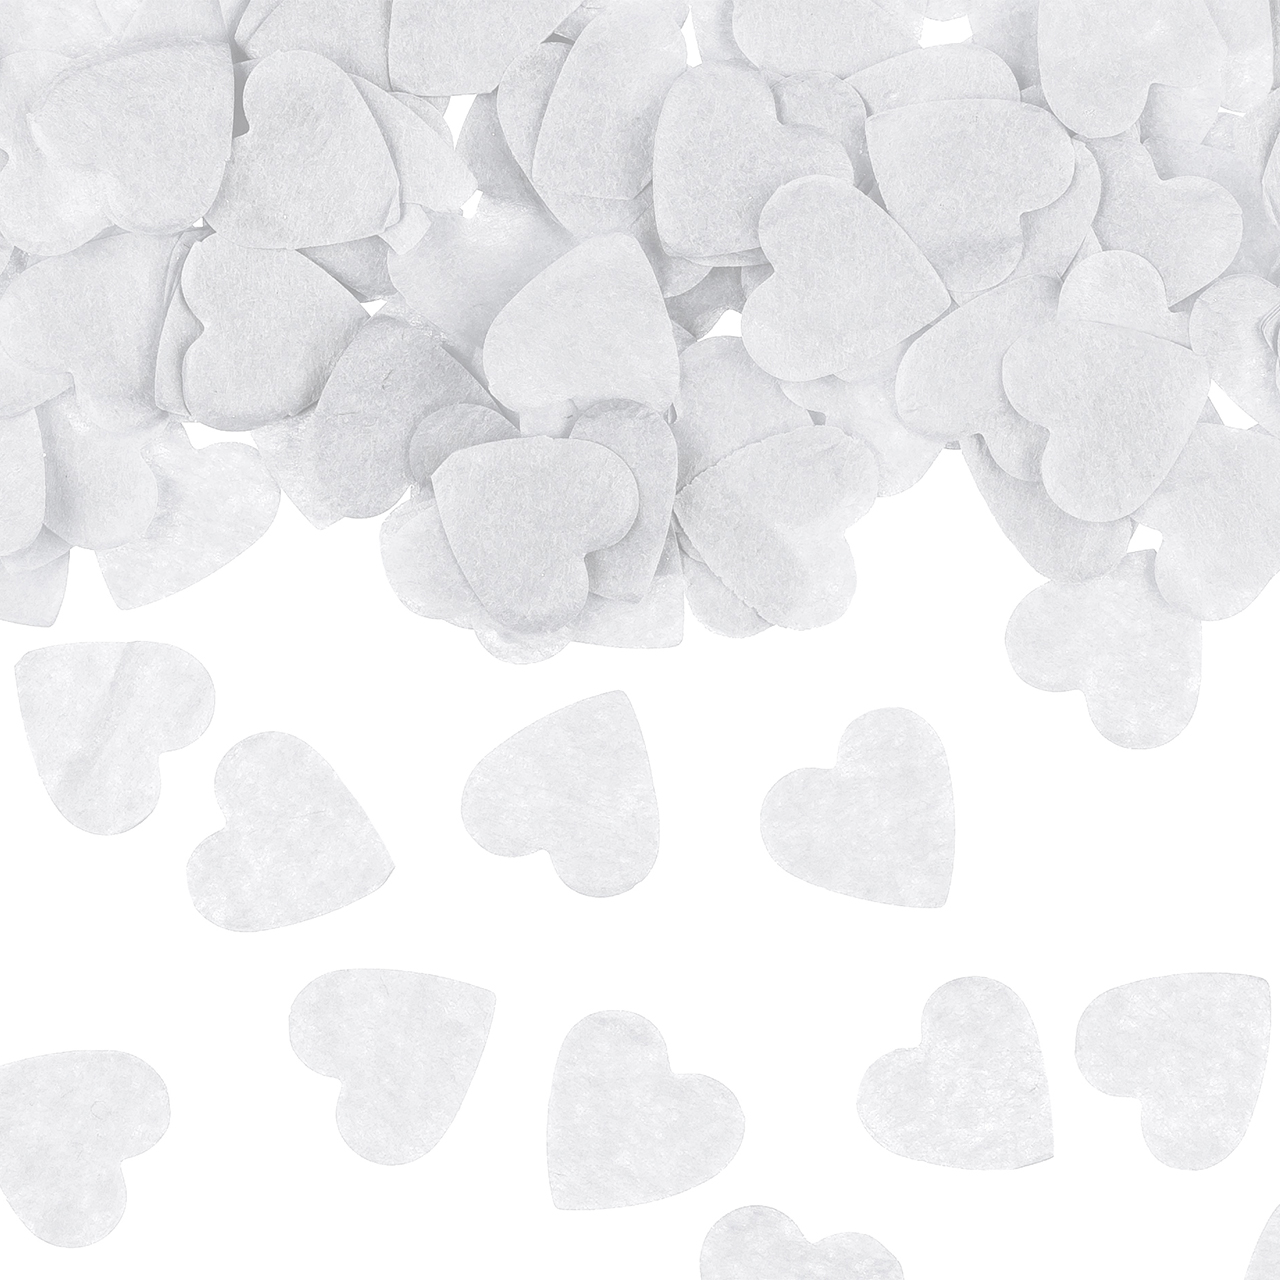 Confetti - White Hearts